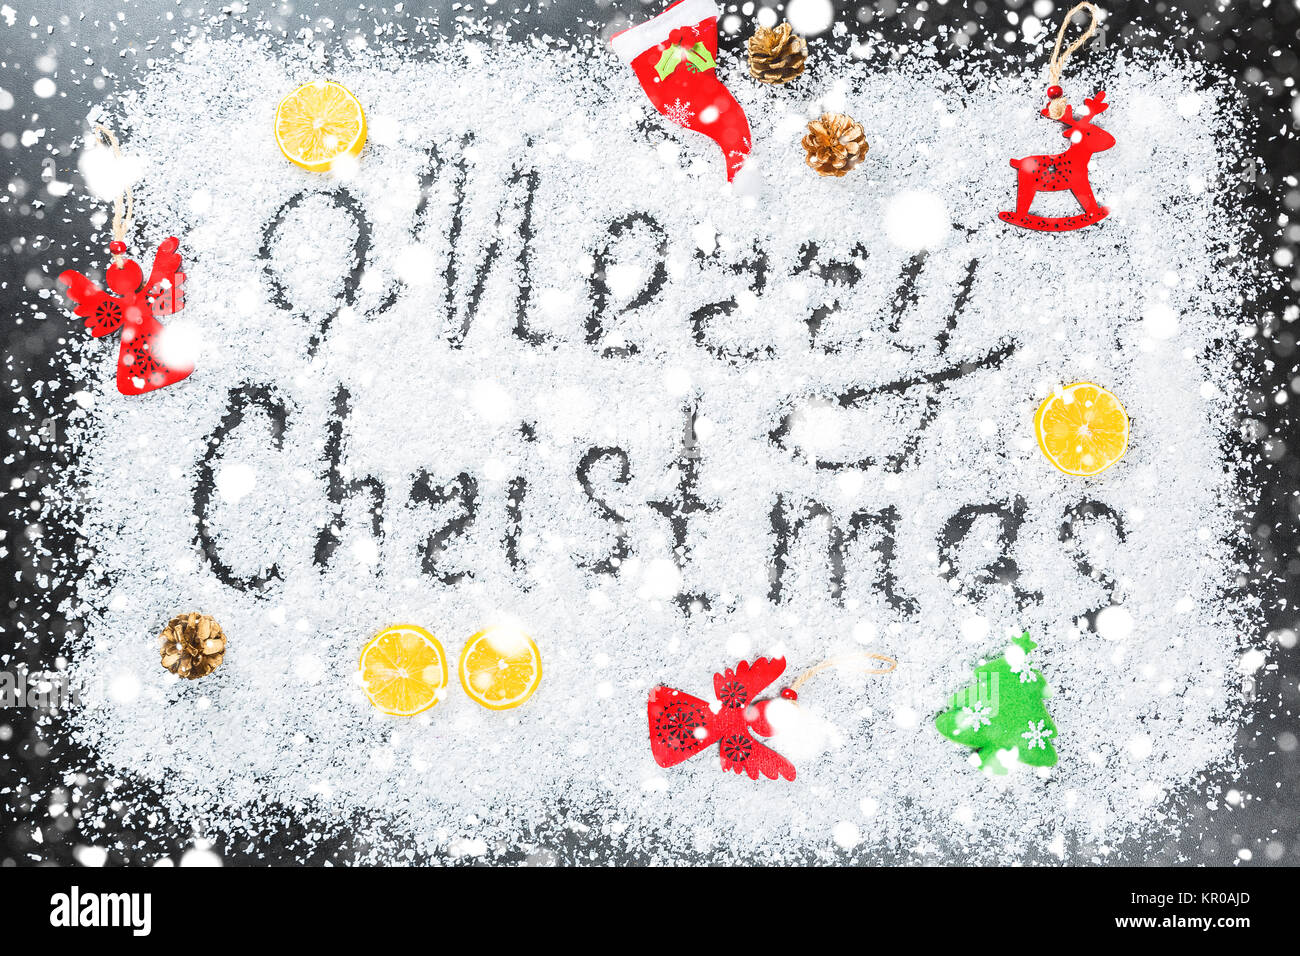 Weihnachten Hintergrund mit der Aufschrift Frohe Weihnachten auf weißem Schnee mit Holzspielzeug, Zitrone, Schneeflocken und Neues Jahr eingerichtet. Winterurlaub Stockfoto